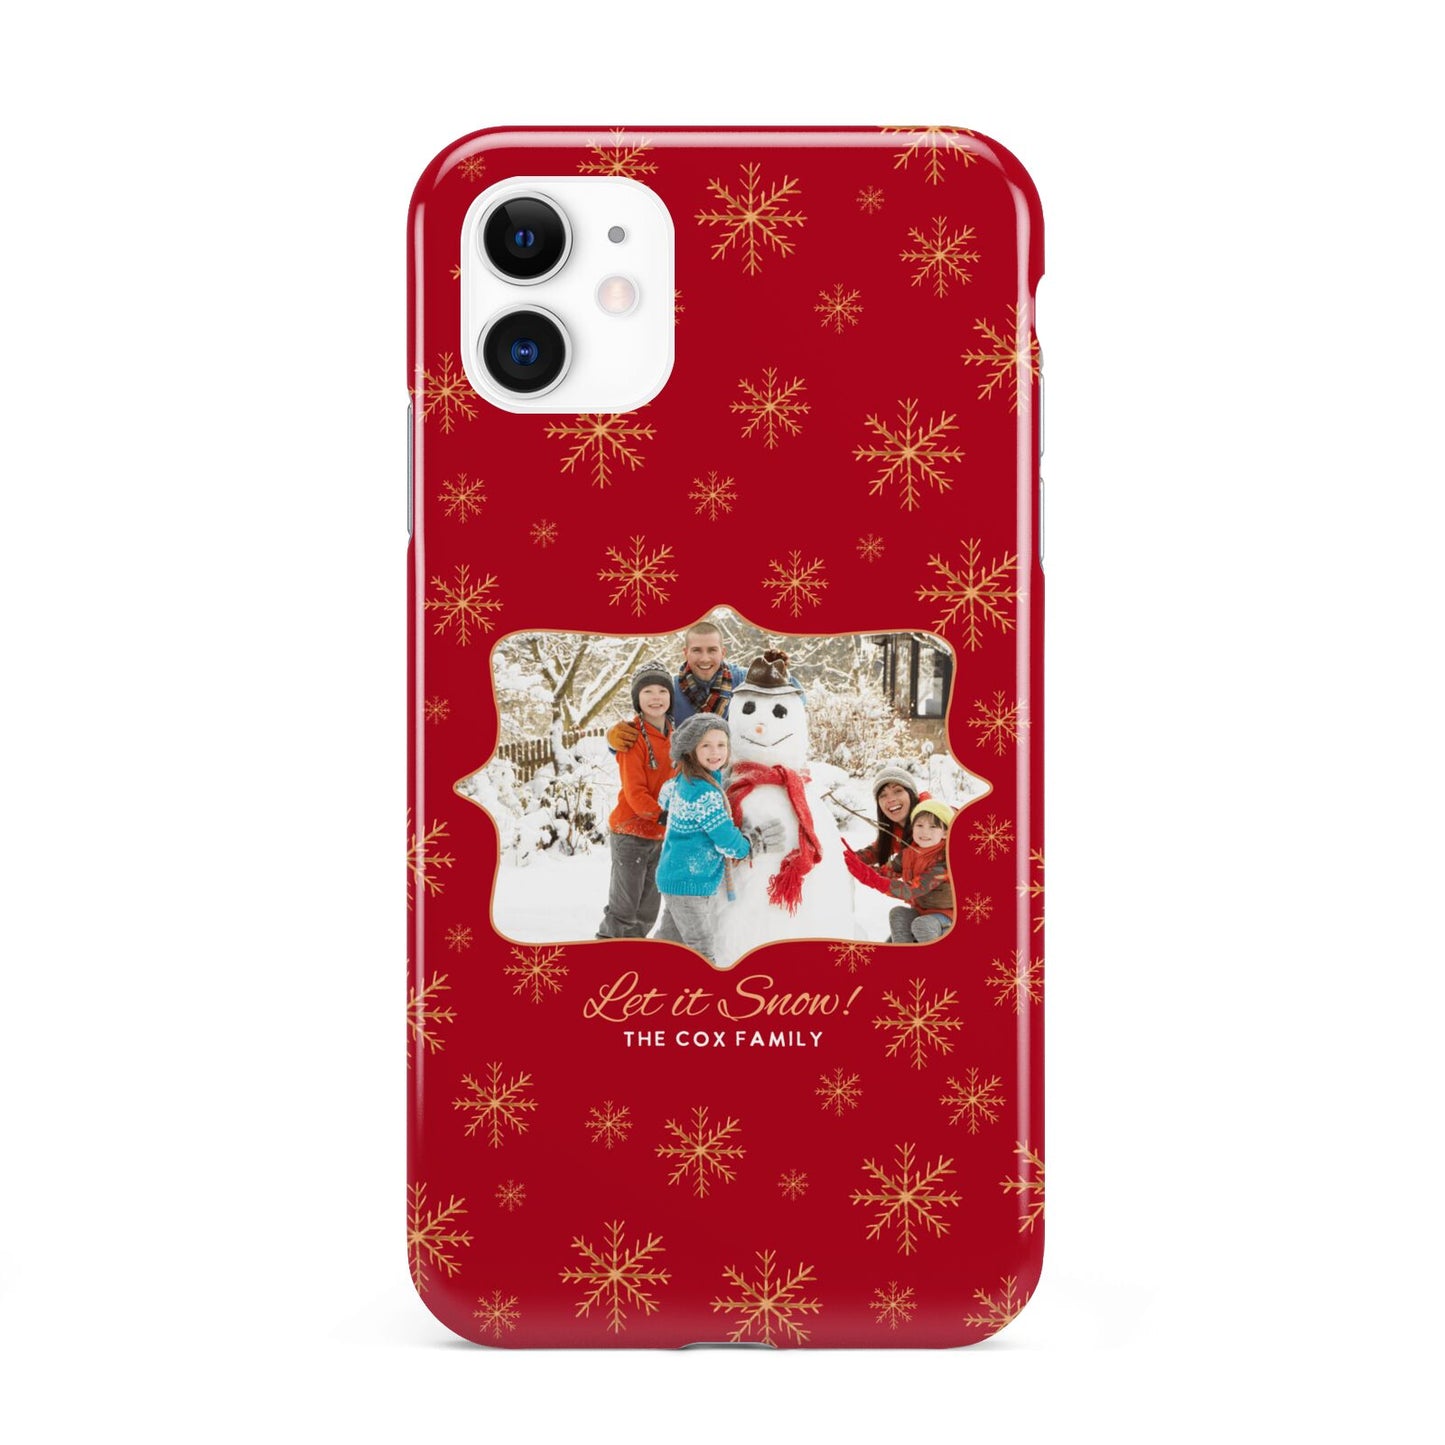 Let it Snow Christmas Photo Upload iPhone 11 3D Tough Case